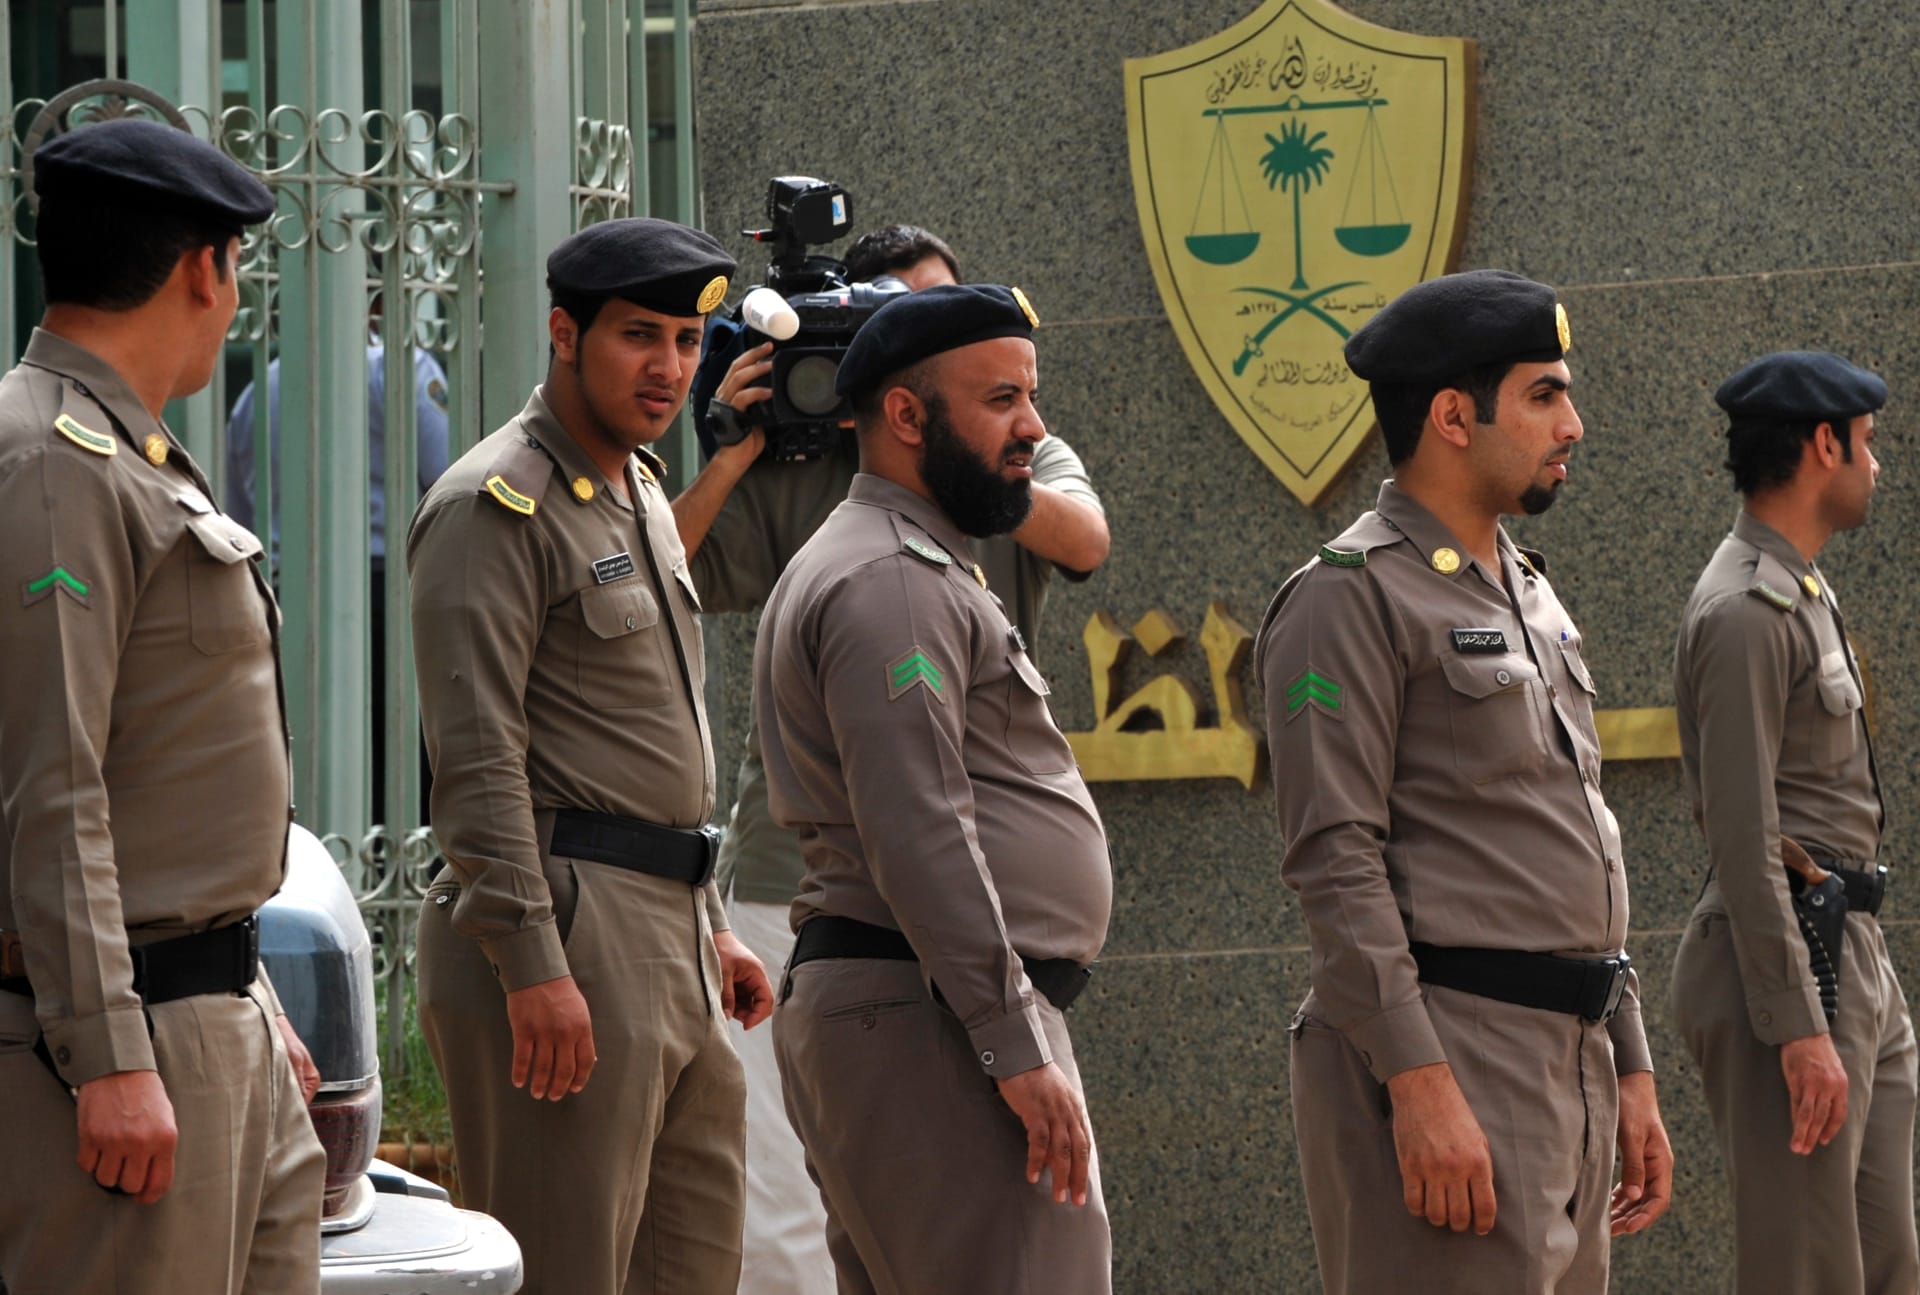 السعودية.. الشرطة تكشف عمليات "إتجار بالبشر" وعشرات ملايين الريالات في العشوائيات